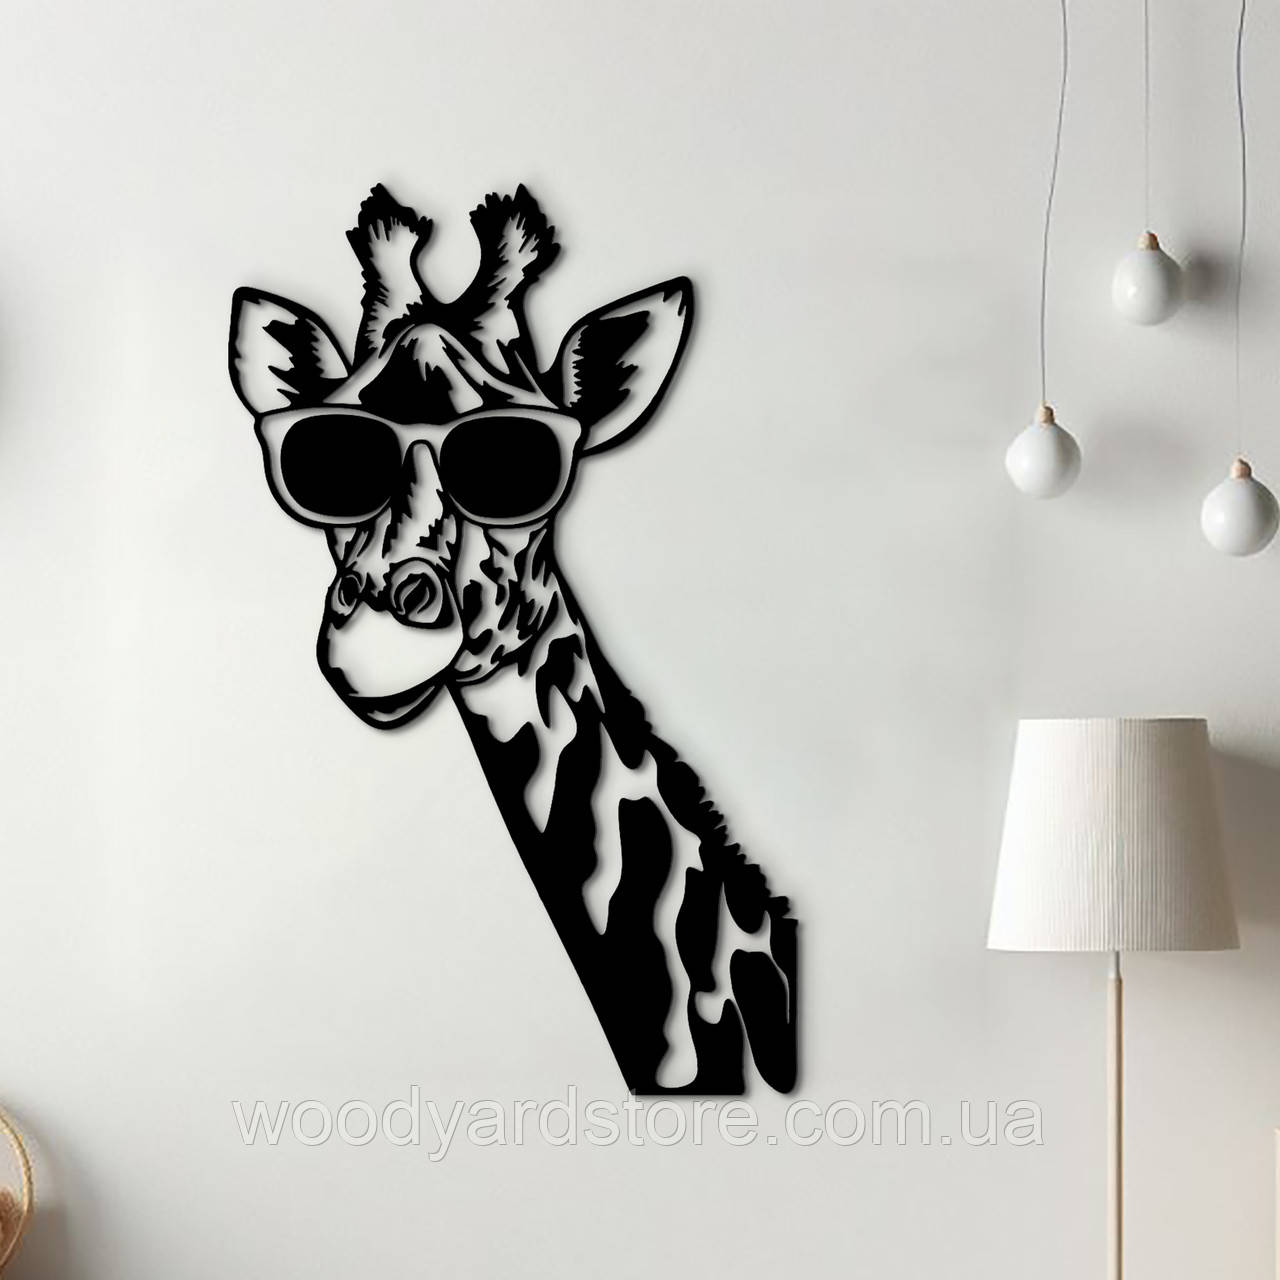 Інтер'єрна картина з дерева, настінний декор для дому "Стильна жирафа", декоративне панно 30x18 см